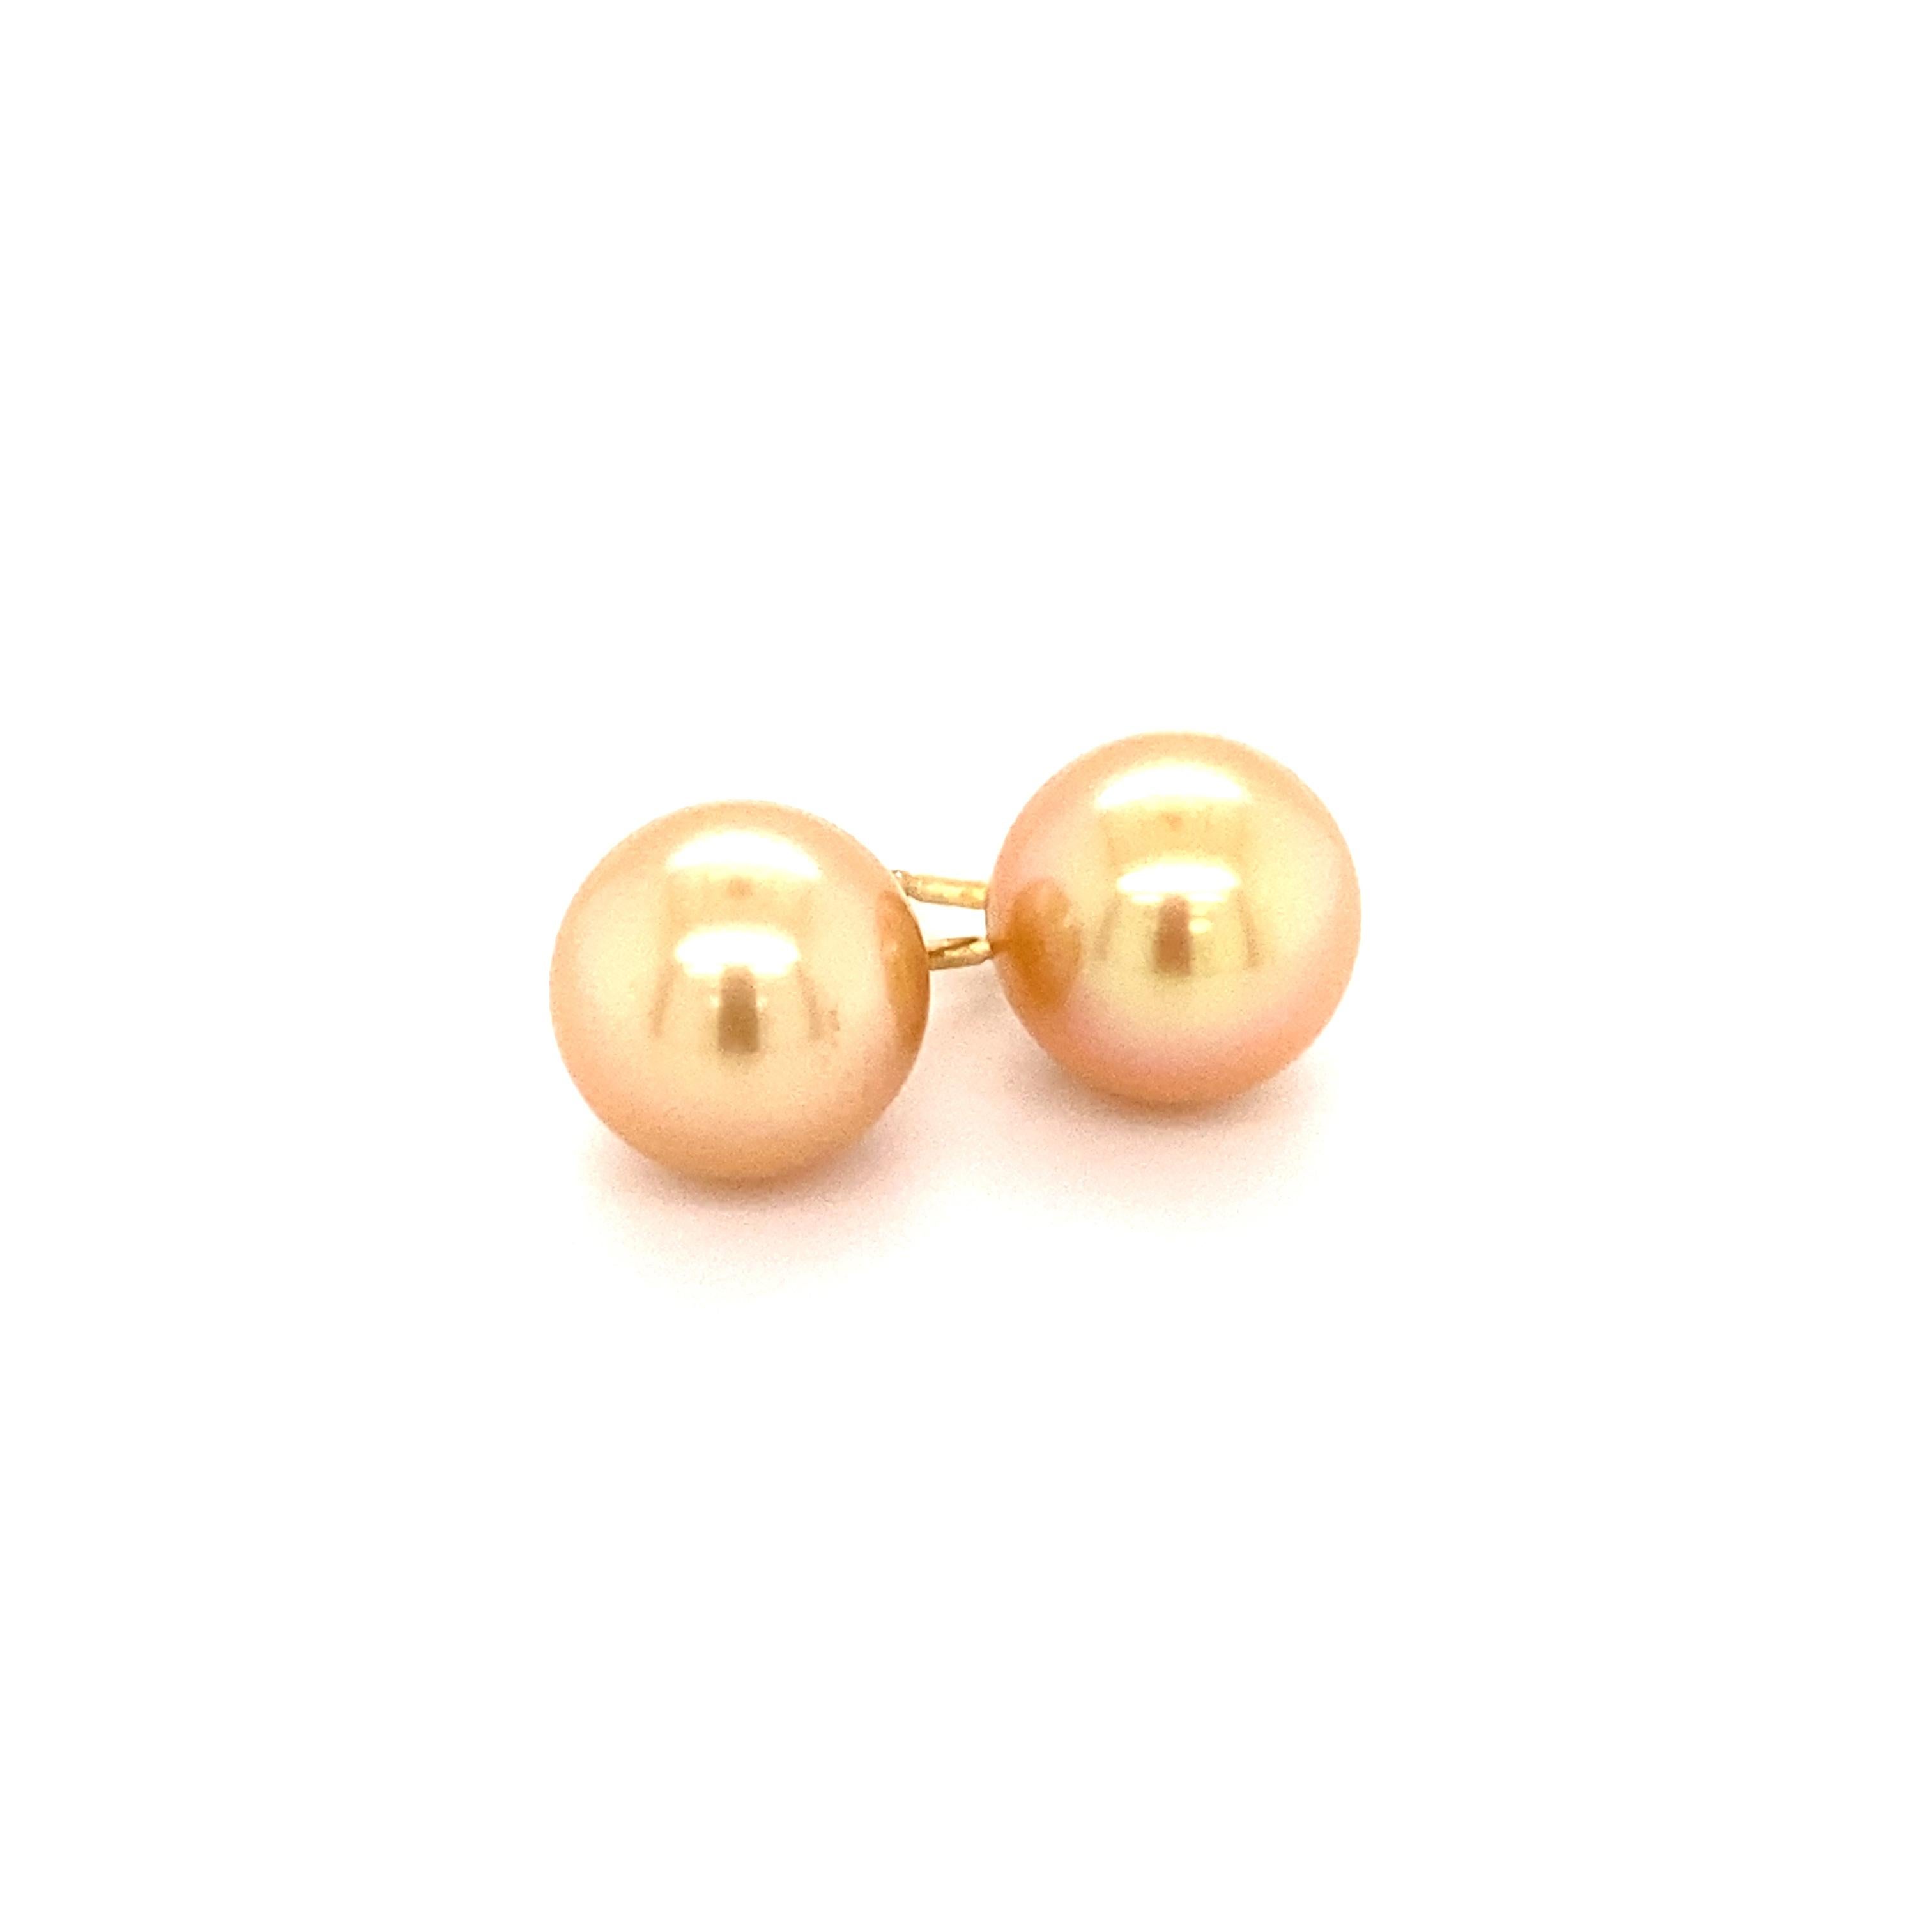 Cette paire de boucles d'oreilles intemporelles est sertie de deux fabuleuses perles de culture des mers du Sud, rondes et dorées, de 11,5 mm de diamètre. Les perles de culture ont non seulement une couleur chaude et rayonnante, mais aussi un très